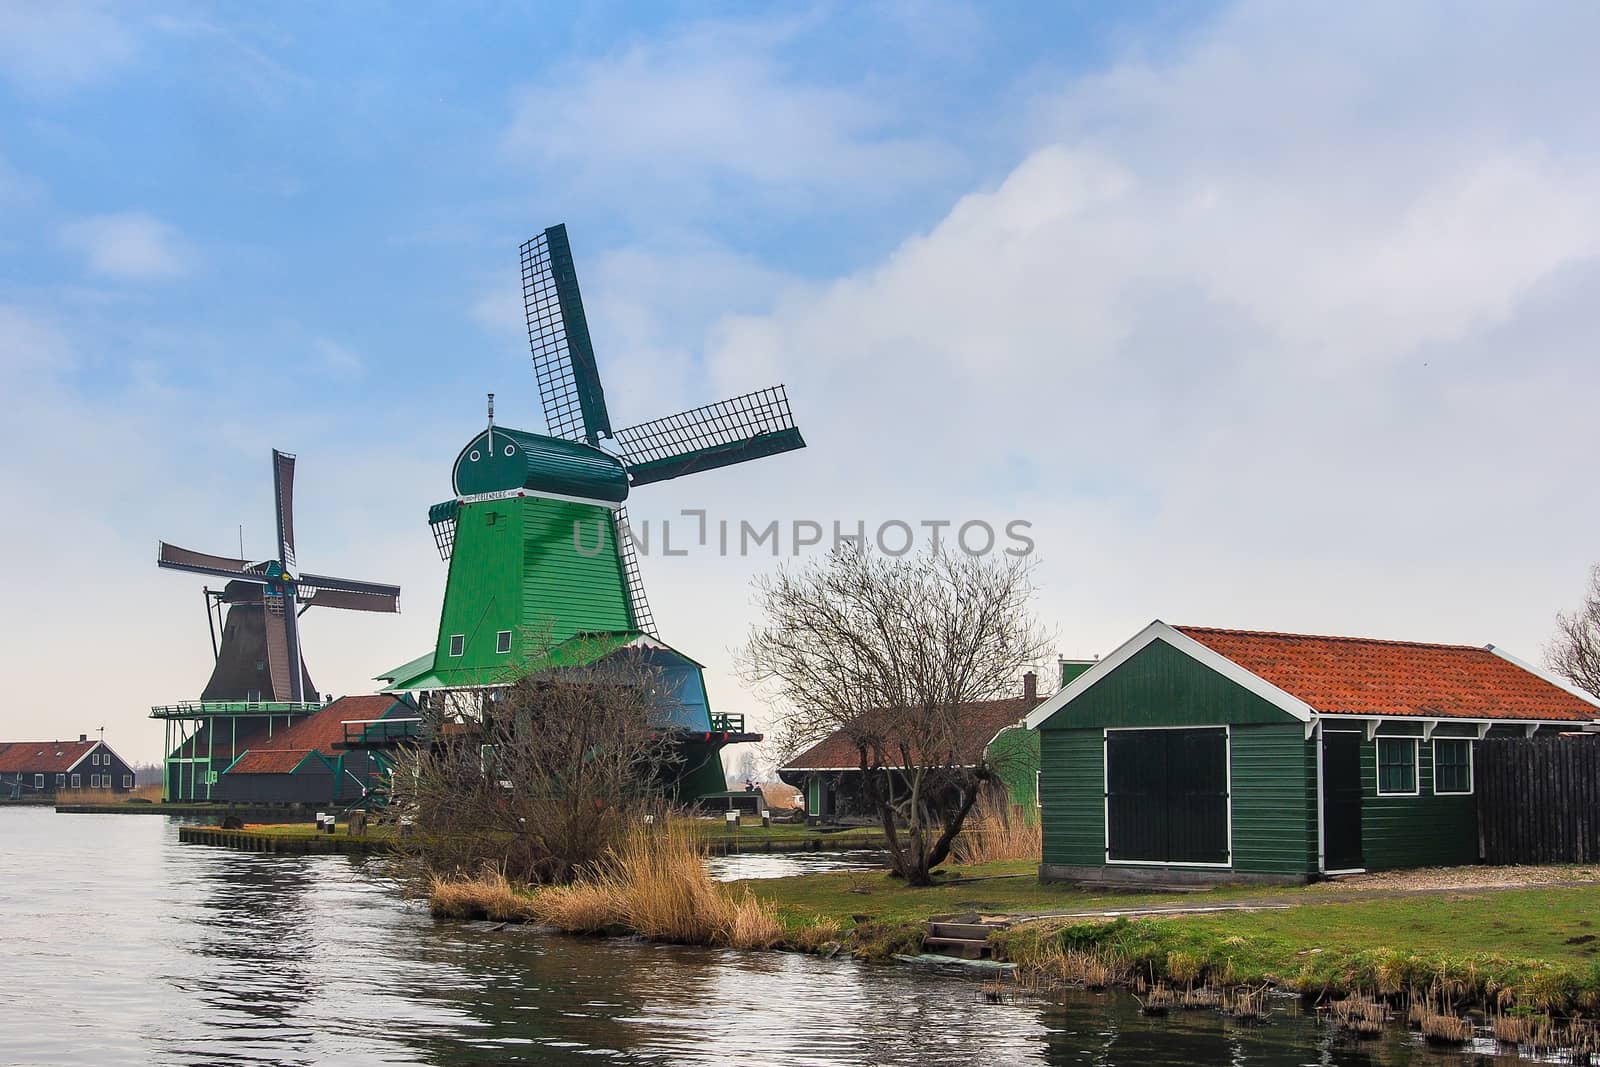 Historic windmills at Zaanse Schans by simpleBE